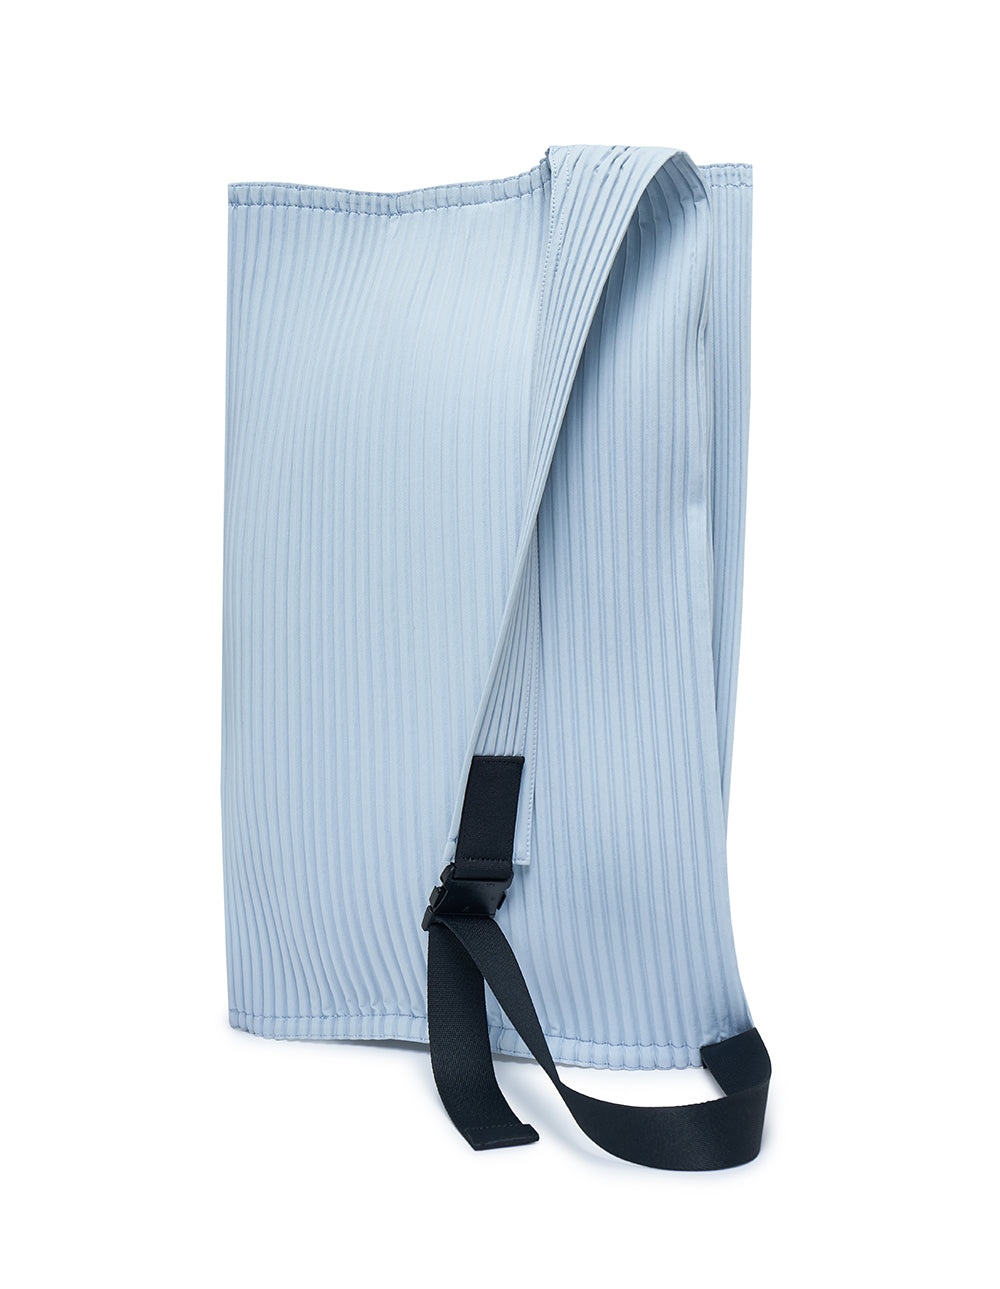 PETAL BAG Shoulder Bag - 2